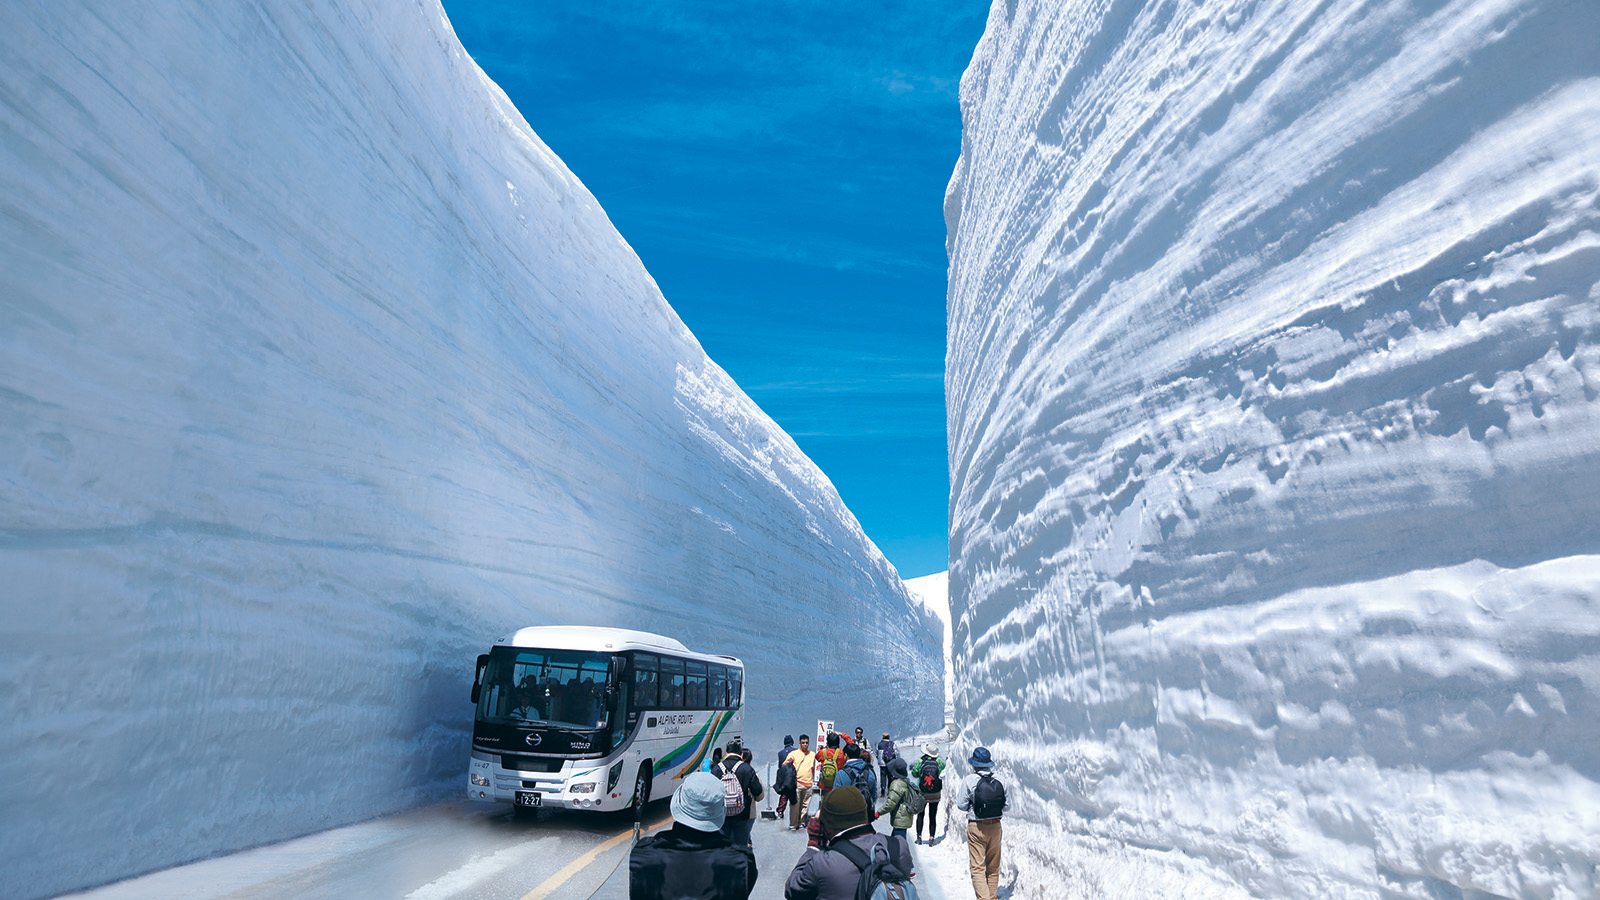 Cung đường chạy quanh núi, tuyết trắng xóa chất cao 17 mét ở Nhật Bản - 2